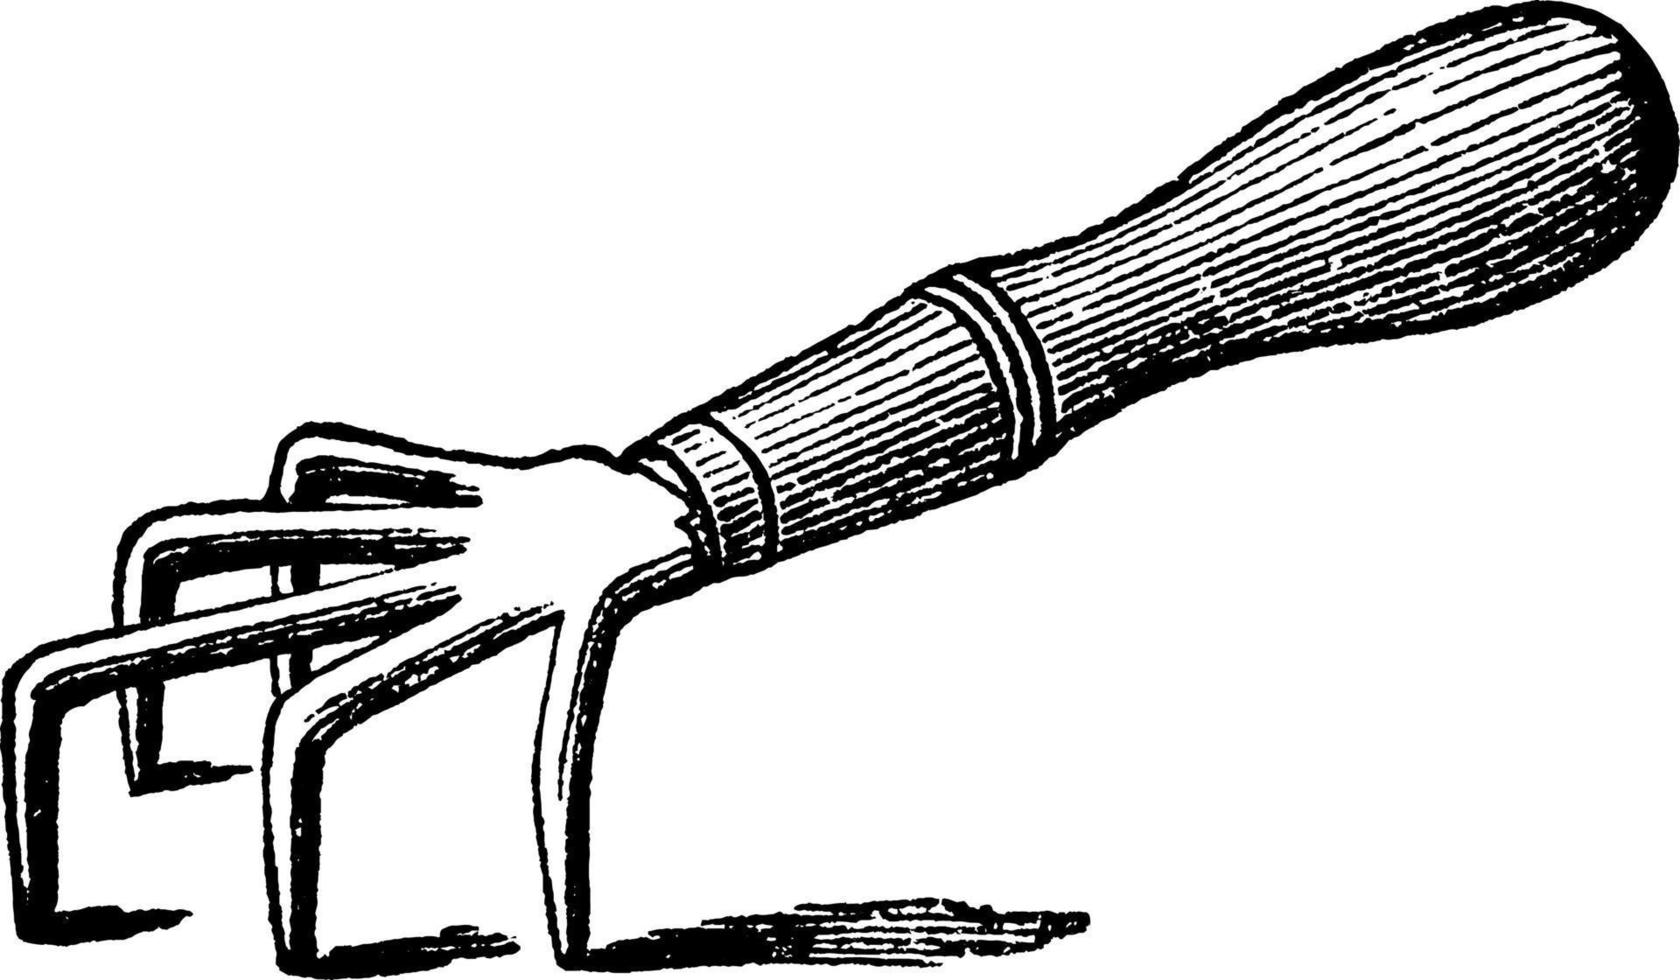 désherbeur excelsior, illustration vintage. vecteur